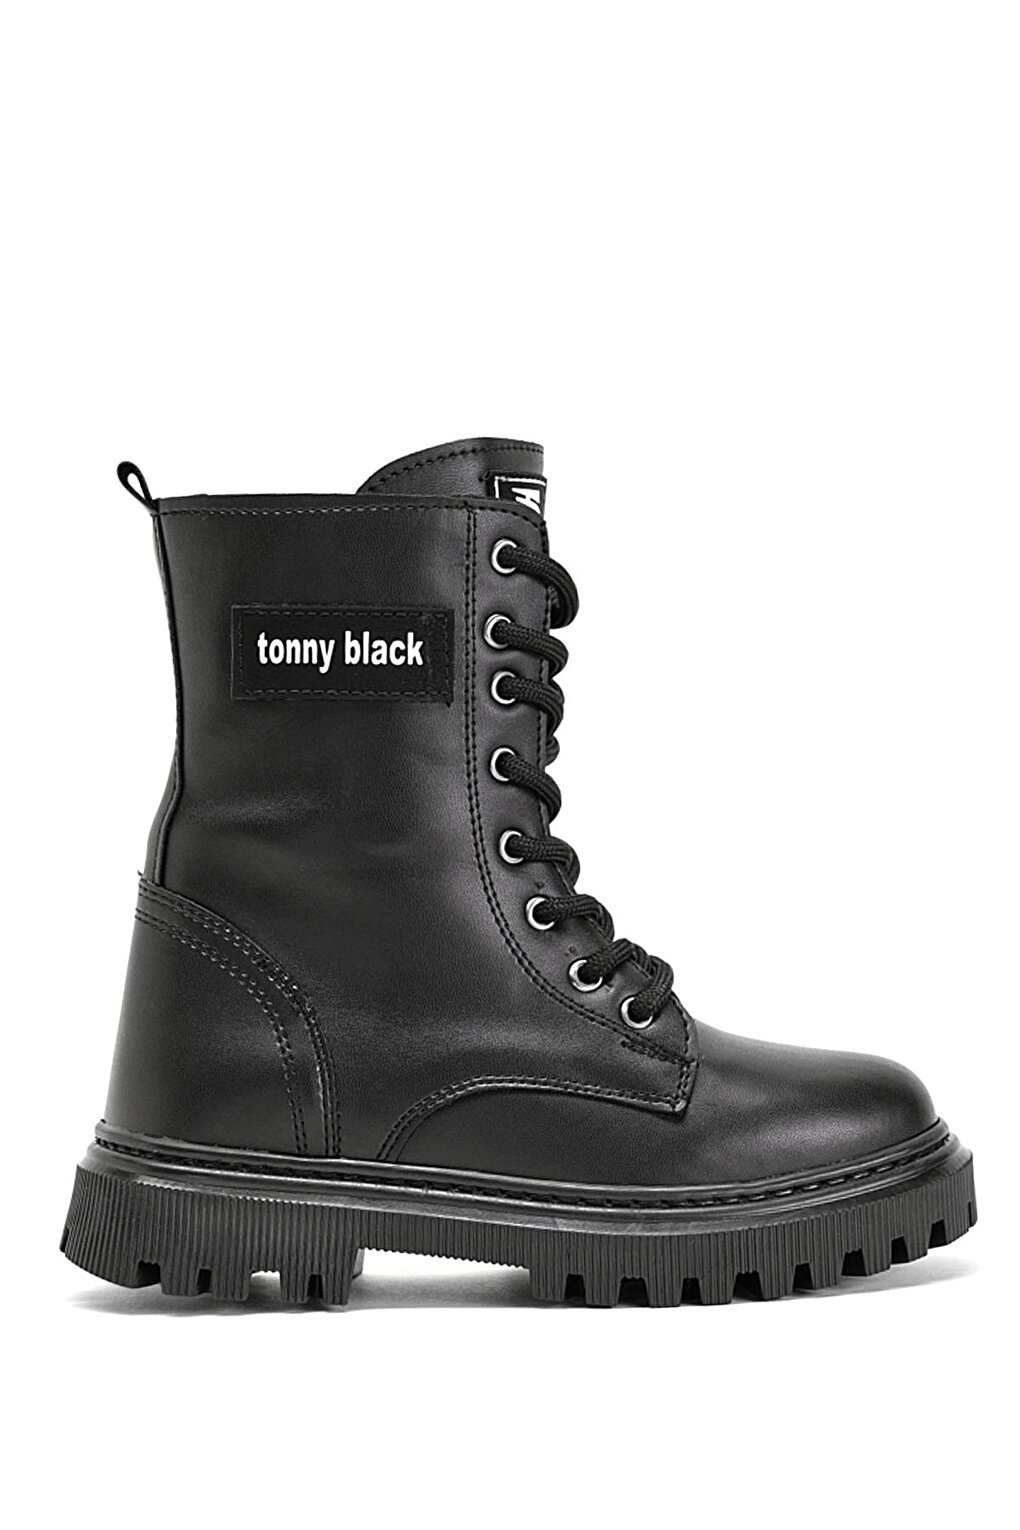 Черные кожаные длинные сапоги для девочек со шнуровкой спереди на термоподошве TONNY BLACK